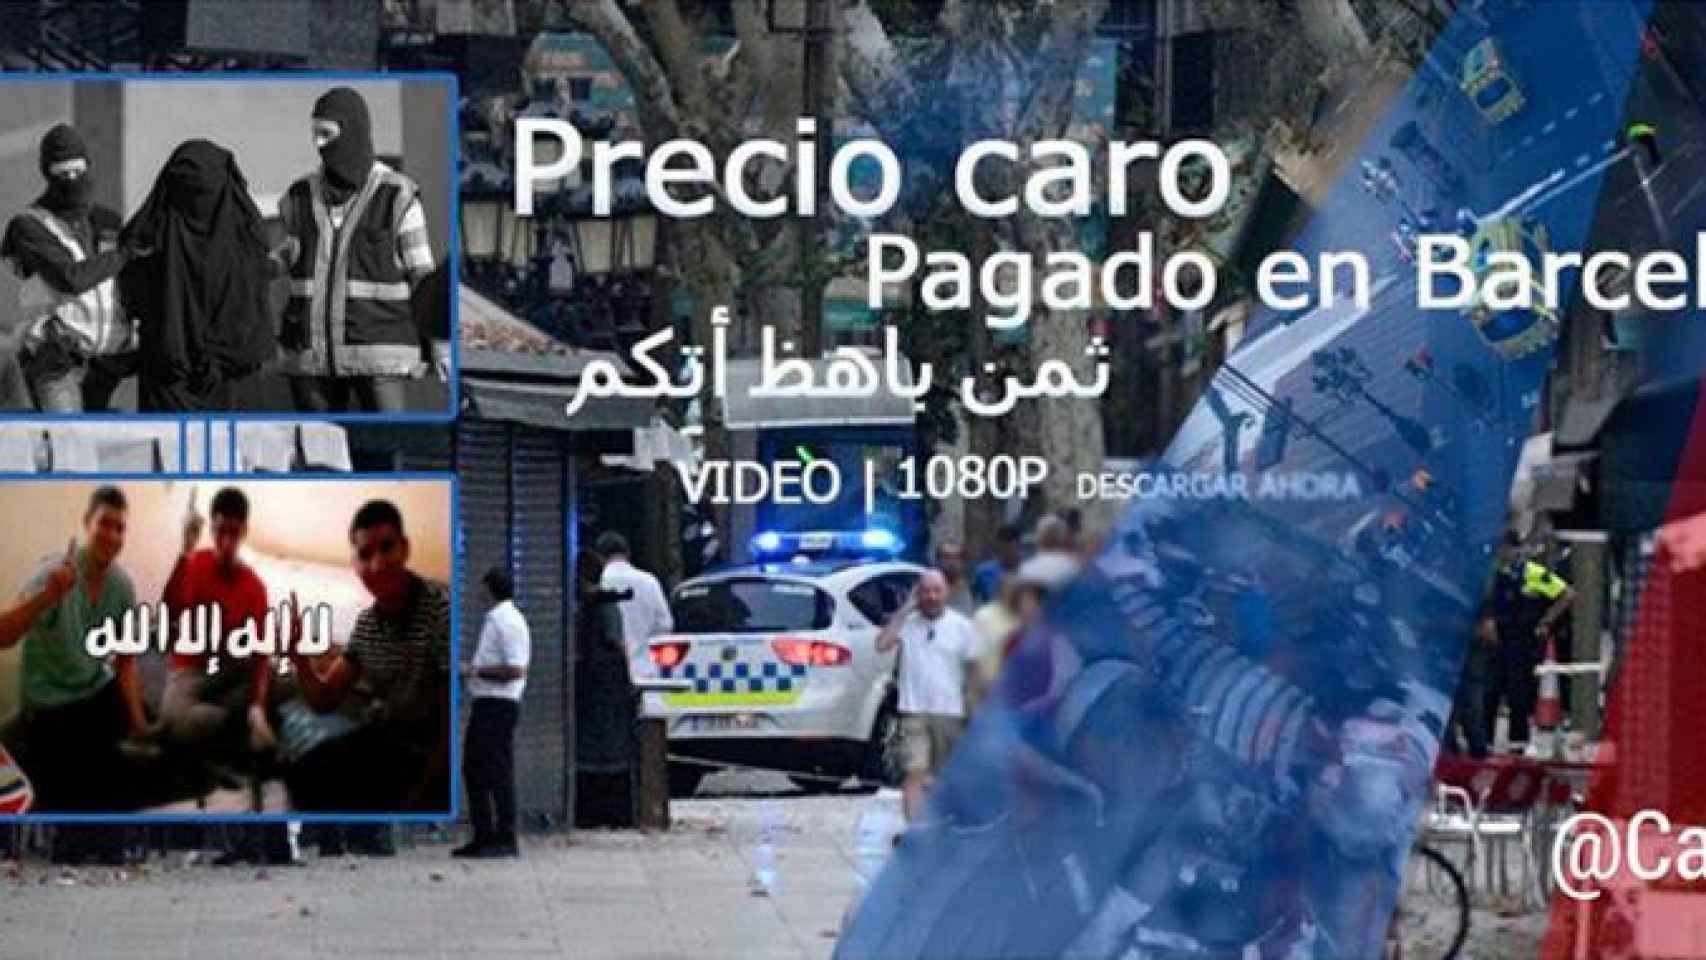 Extracto del vídeo de amenaza yihadista contra Barcelona / @CarloSeisdedos